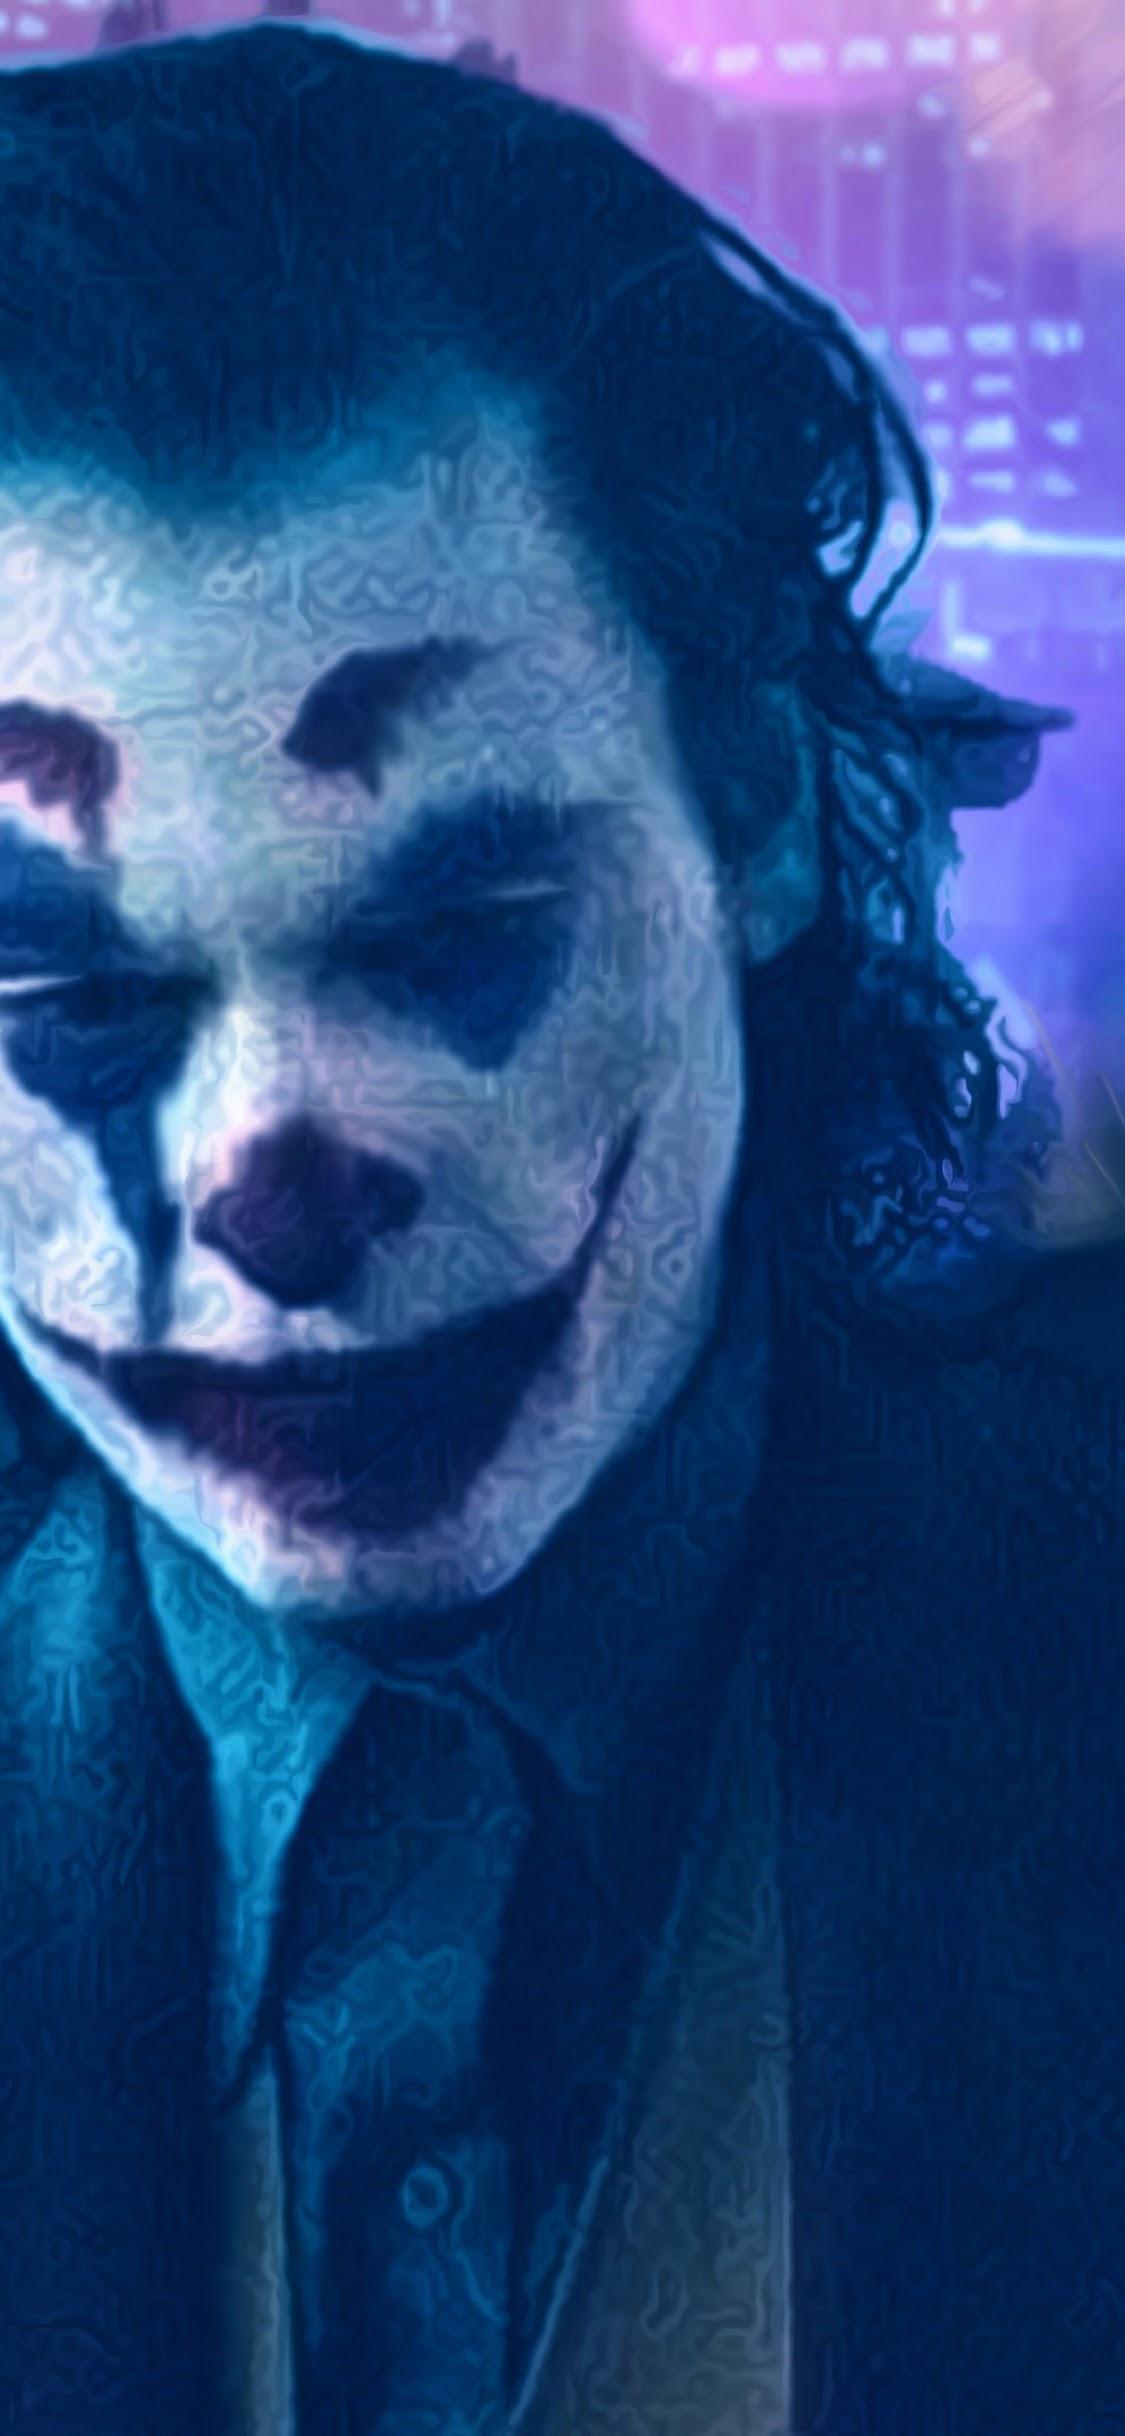 Joker 2019 Juaquin Phoenix 4K Wallpaper